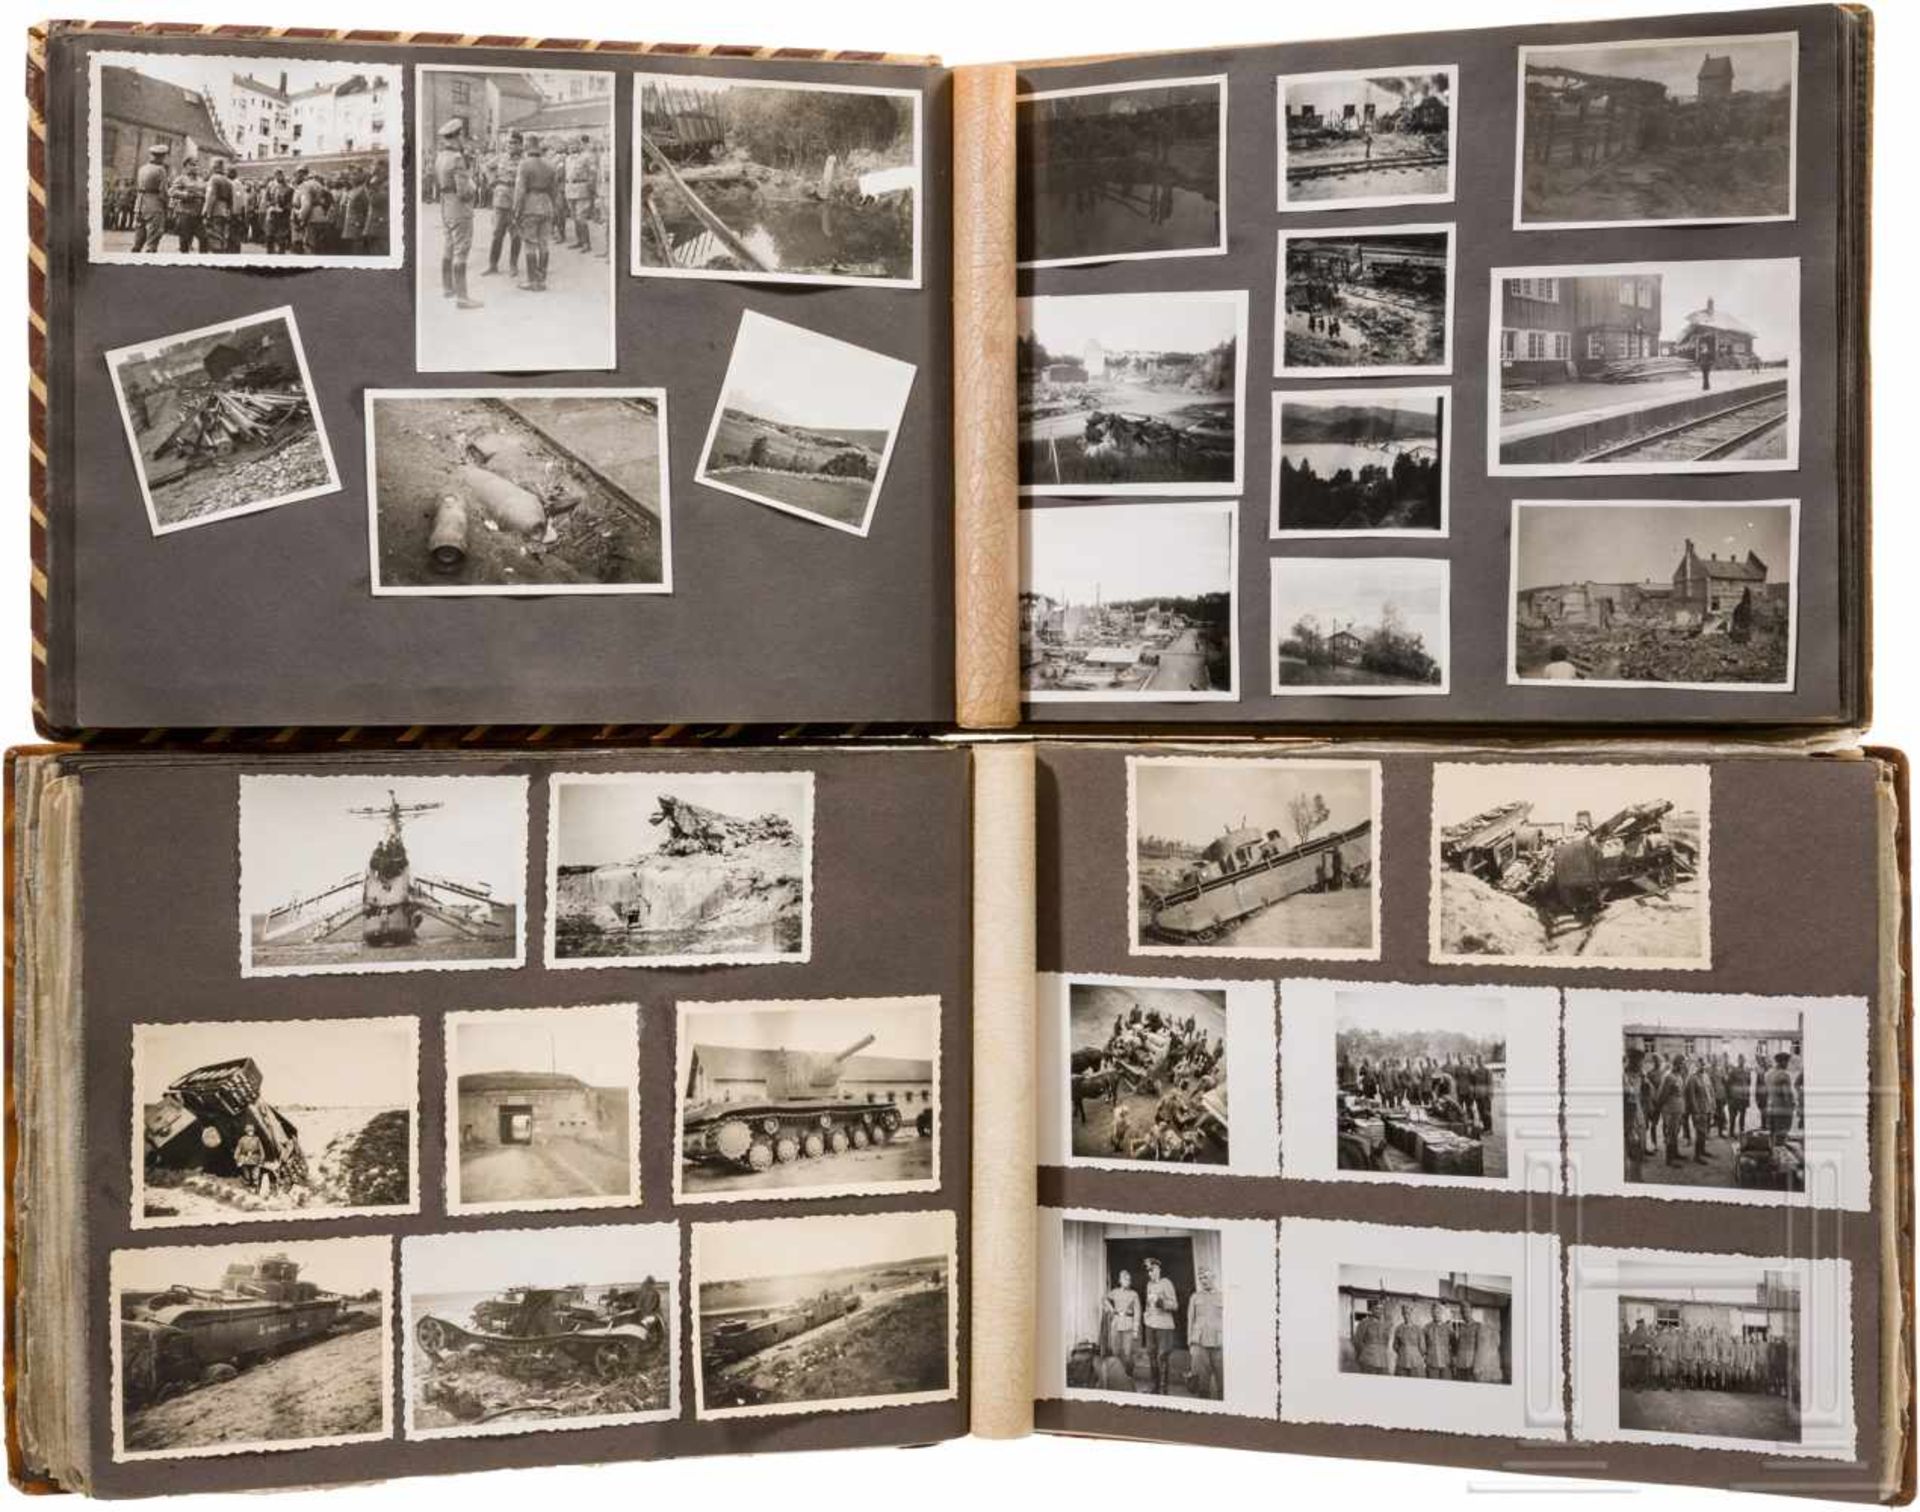 Zwei Fotoalben eines Angehörigen der SchutzpolizeiEin Album mit ca. 130 Fotos von der Fahrt nach